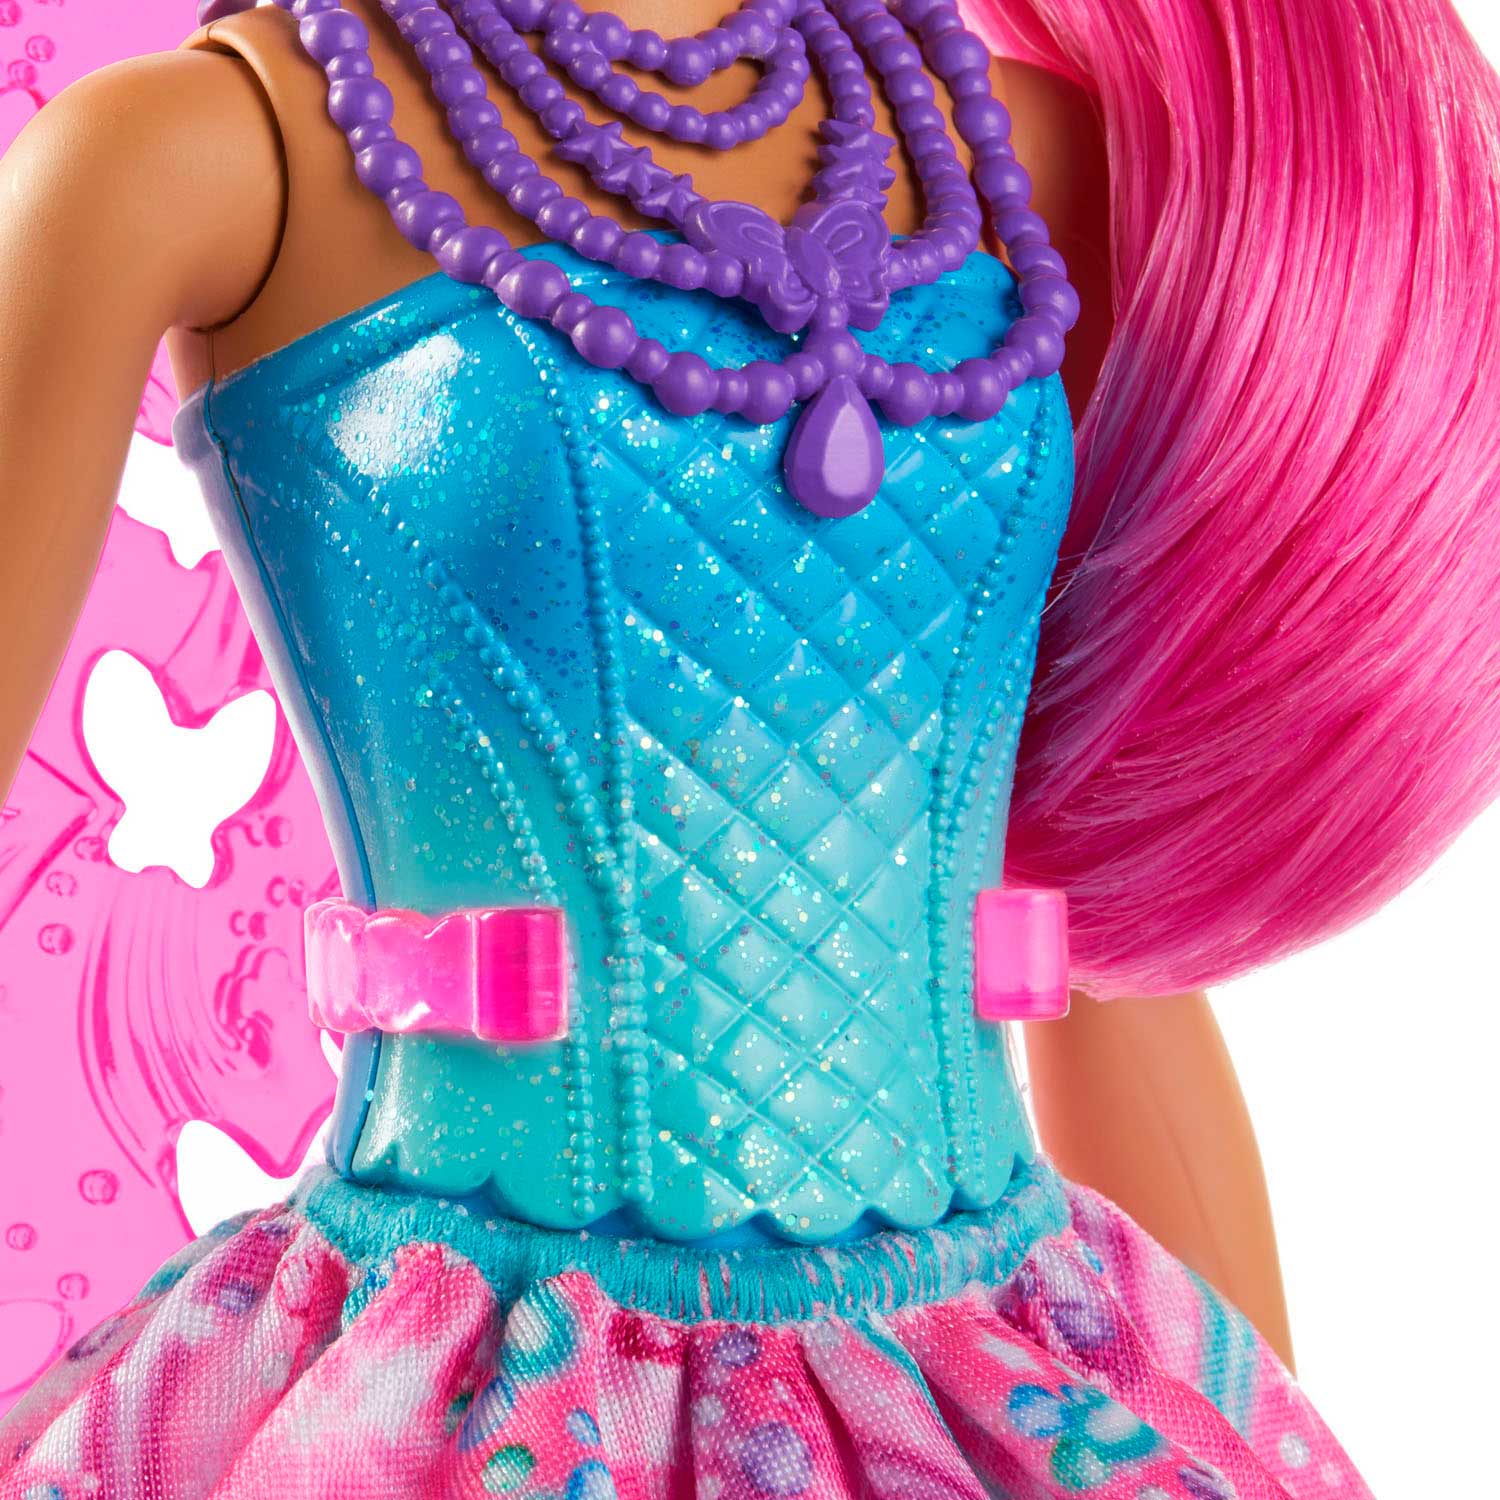 Barbie Dreamtopia met Roze Haar - Barbiepop